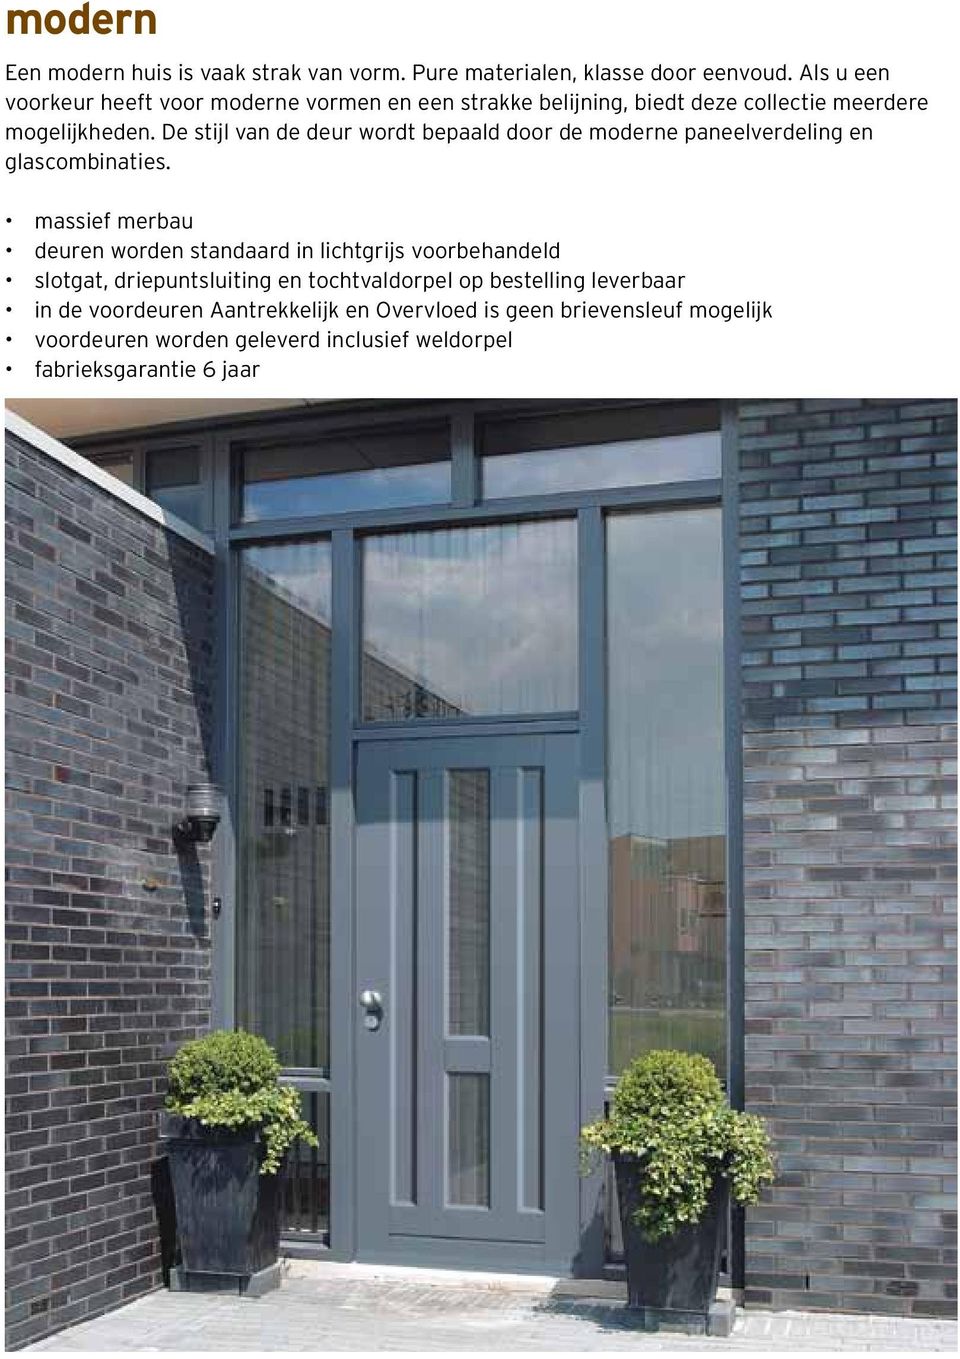 De stijl van de deur wordt bepaald door de moderne paneelverdeling en glascombinaties.